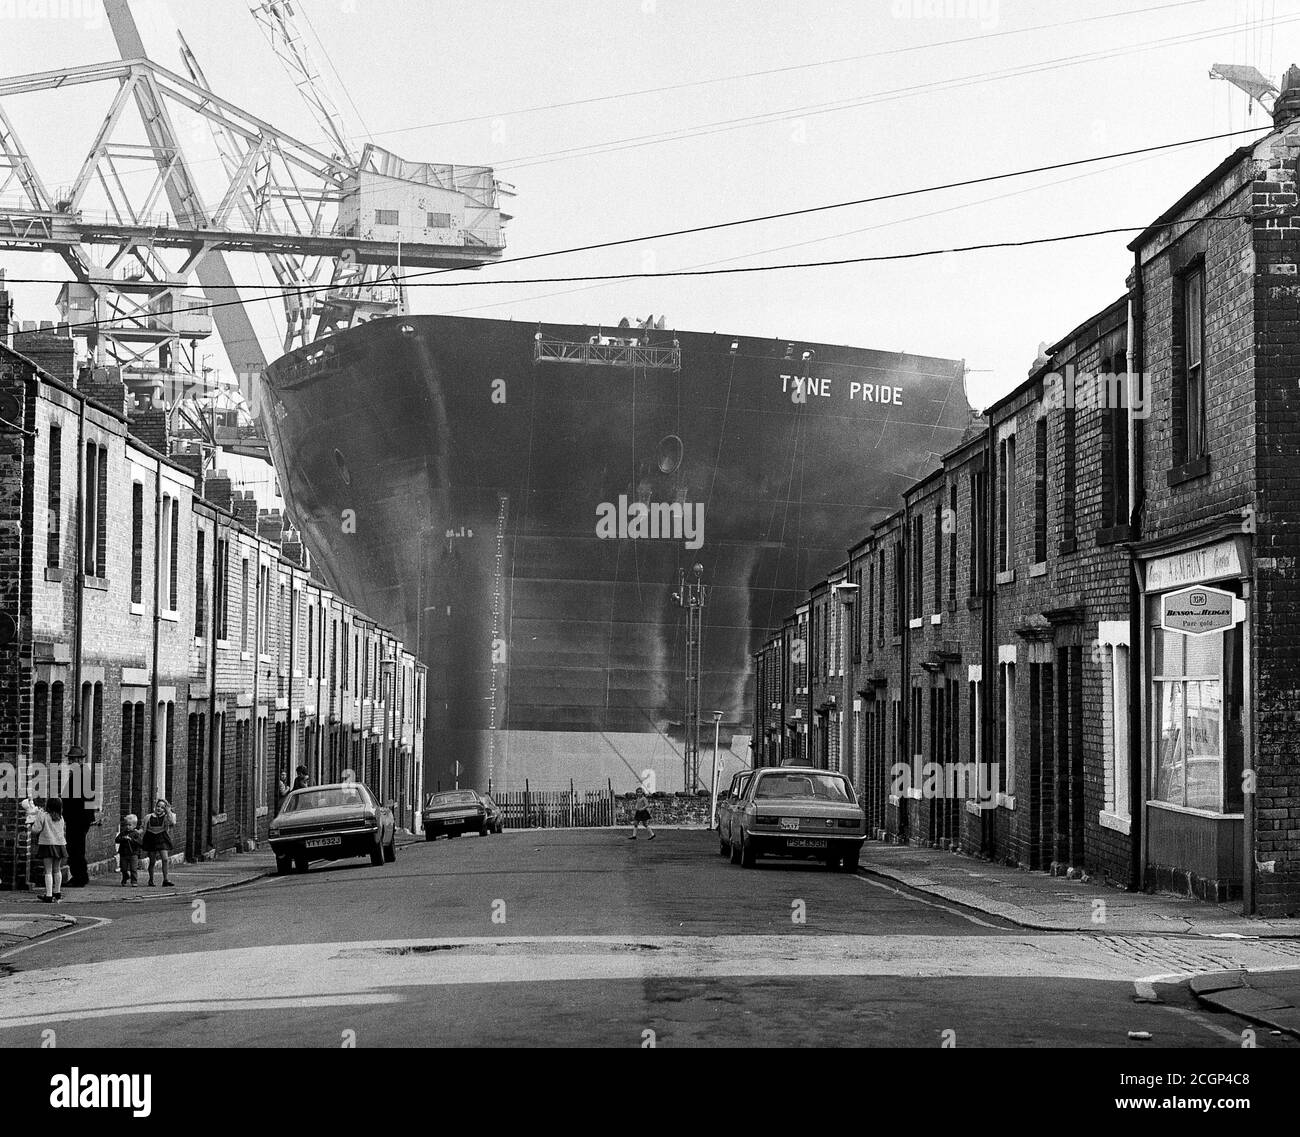 Tanker Tyne Pride, Leslie Street, Wallsend, Swan Hunter Shipbuilders, 1975 Stock Photo